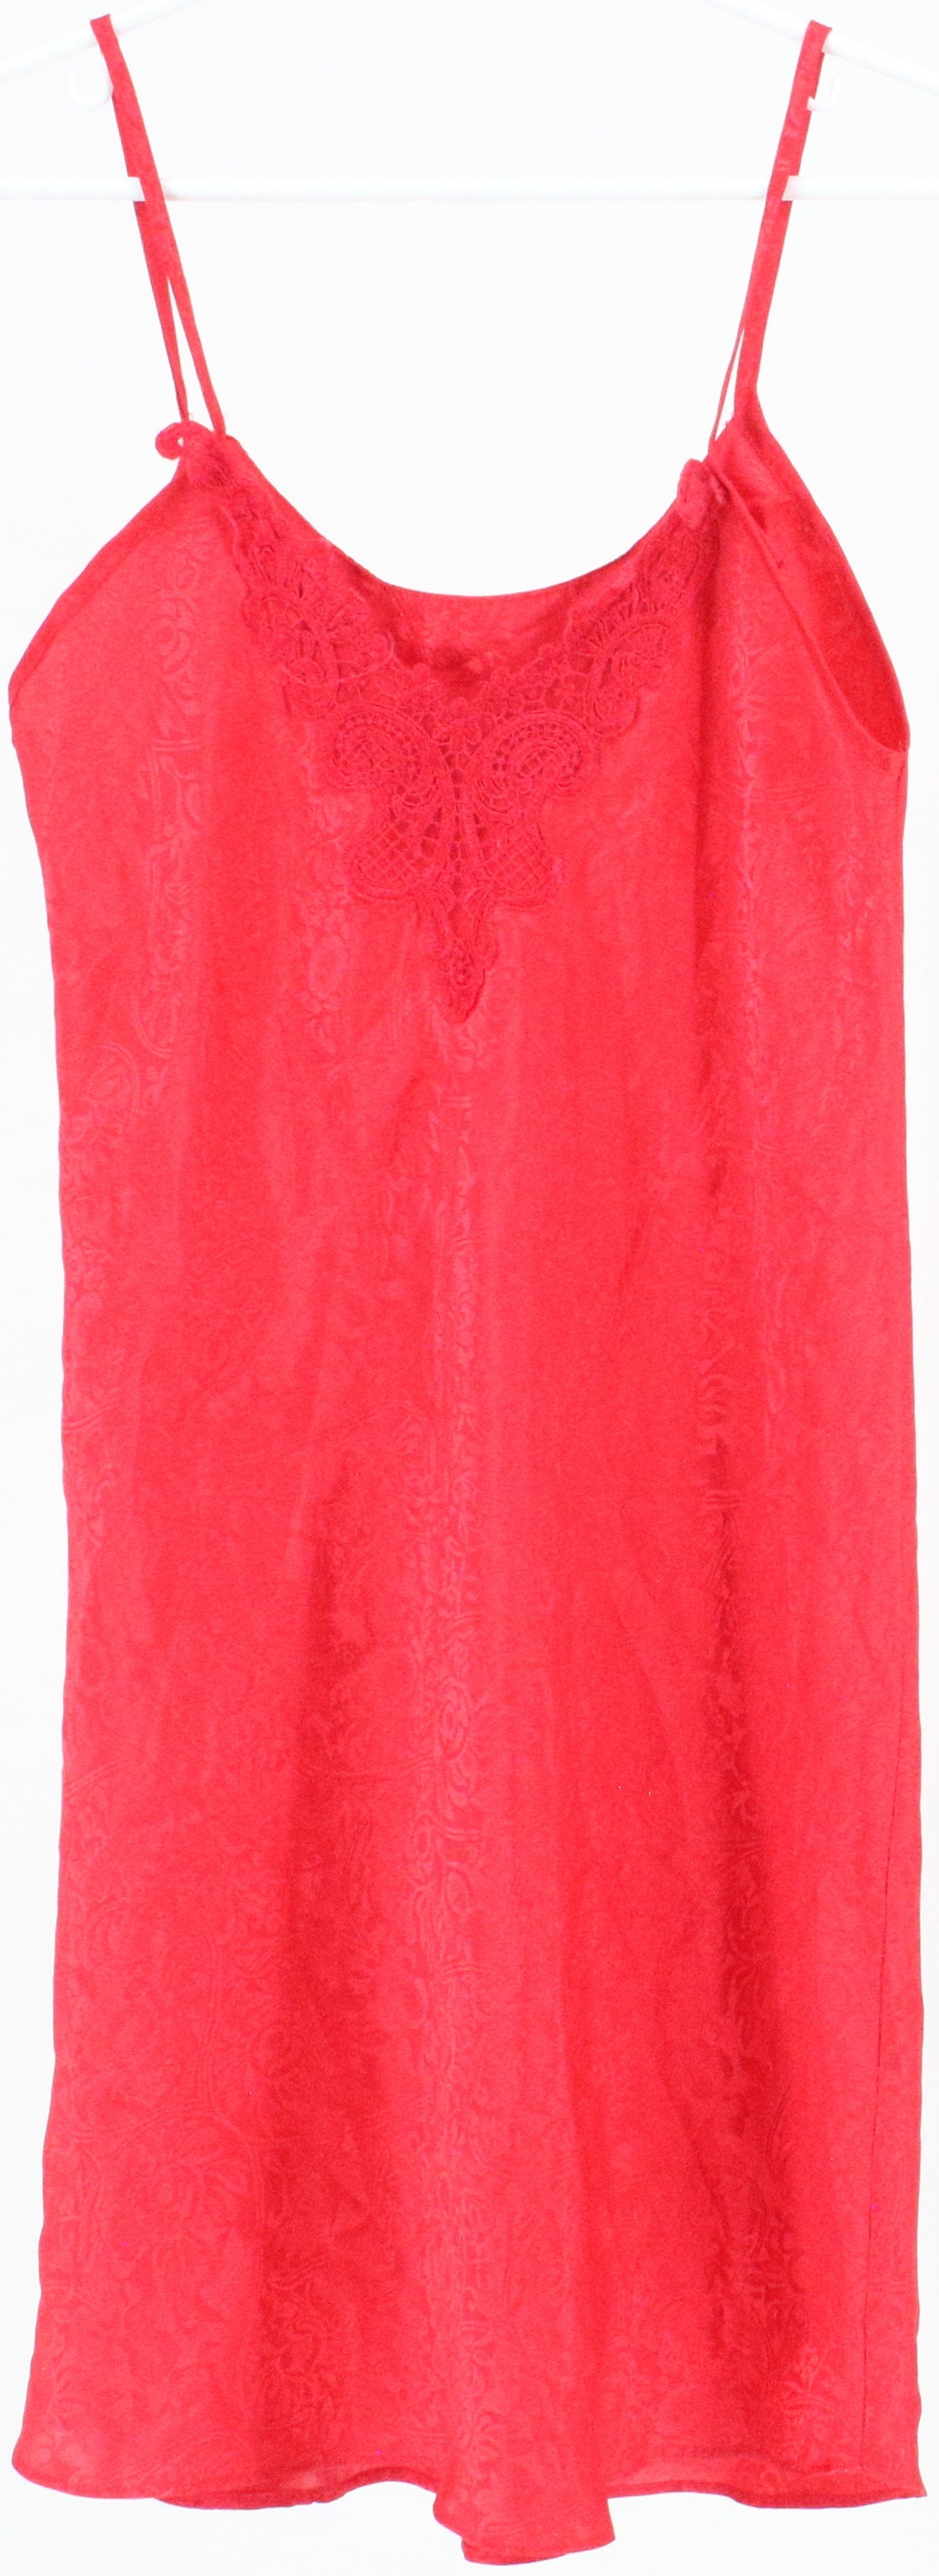 Inner Most Red Slip Dress